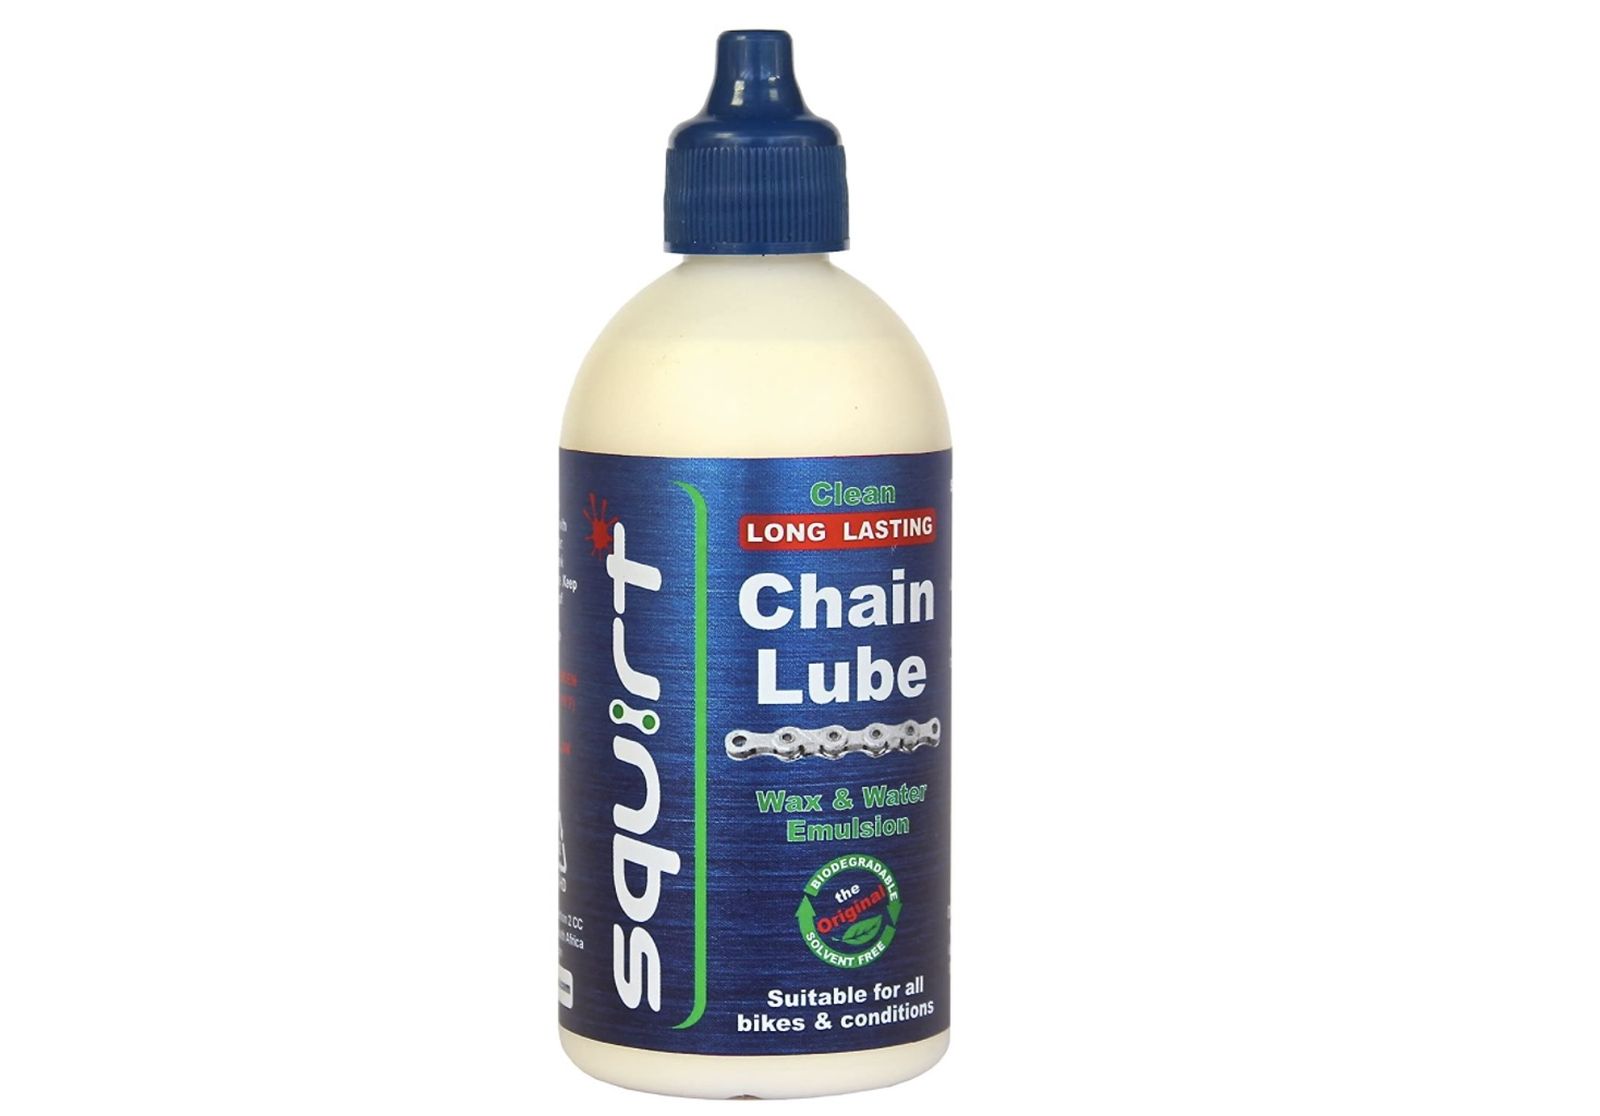 https://bikerumor.com/wp-content/uploads/2021/06/squirt-chain-lube-best-bike-chain-lube.jpg